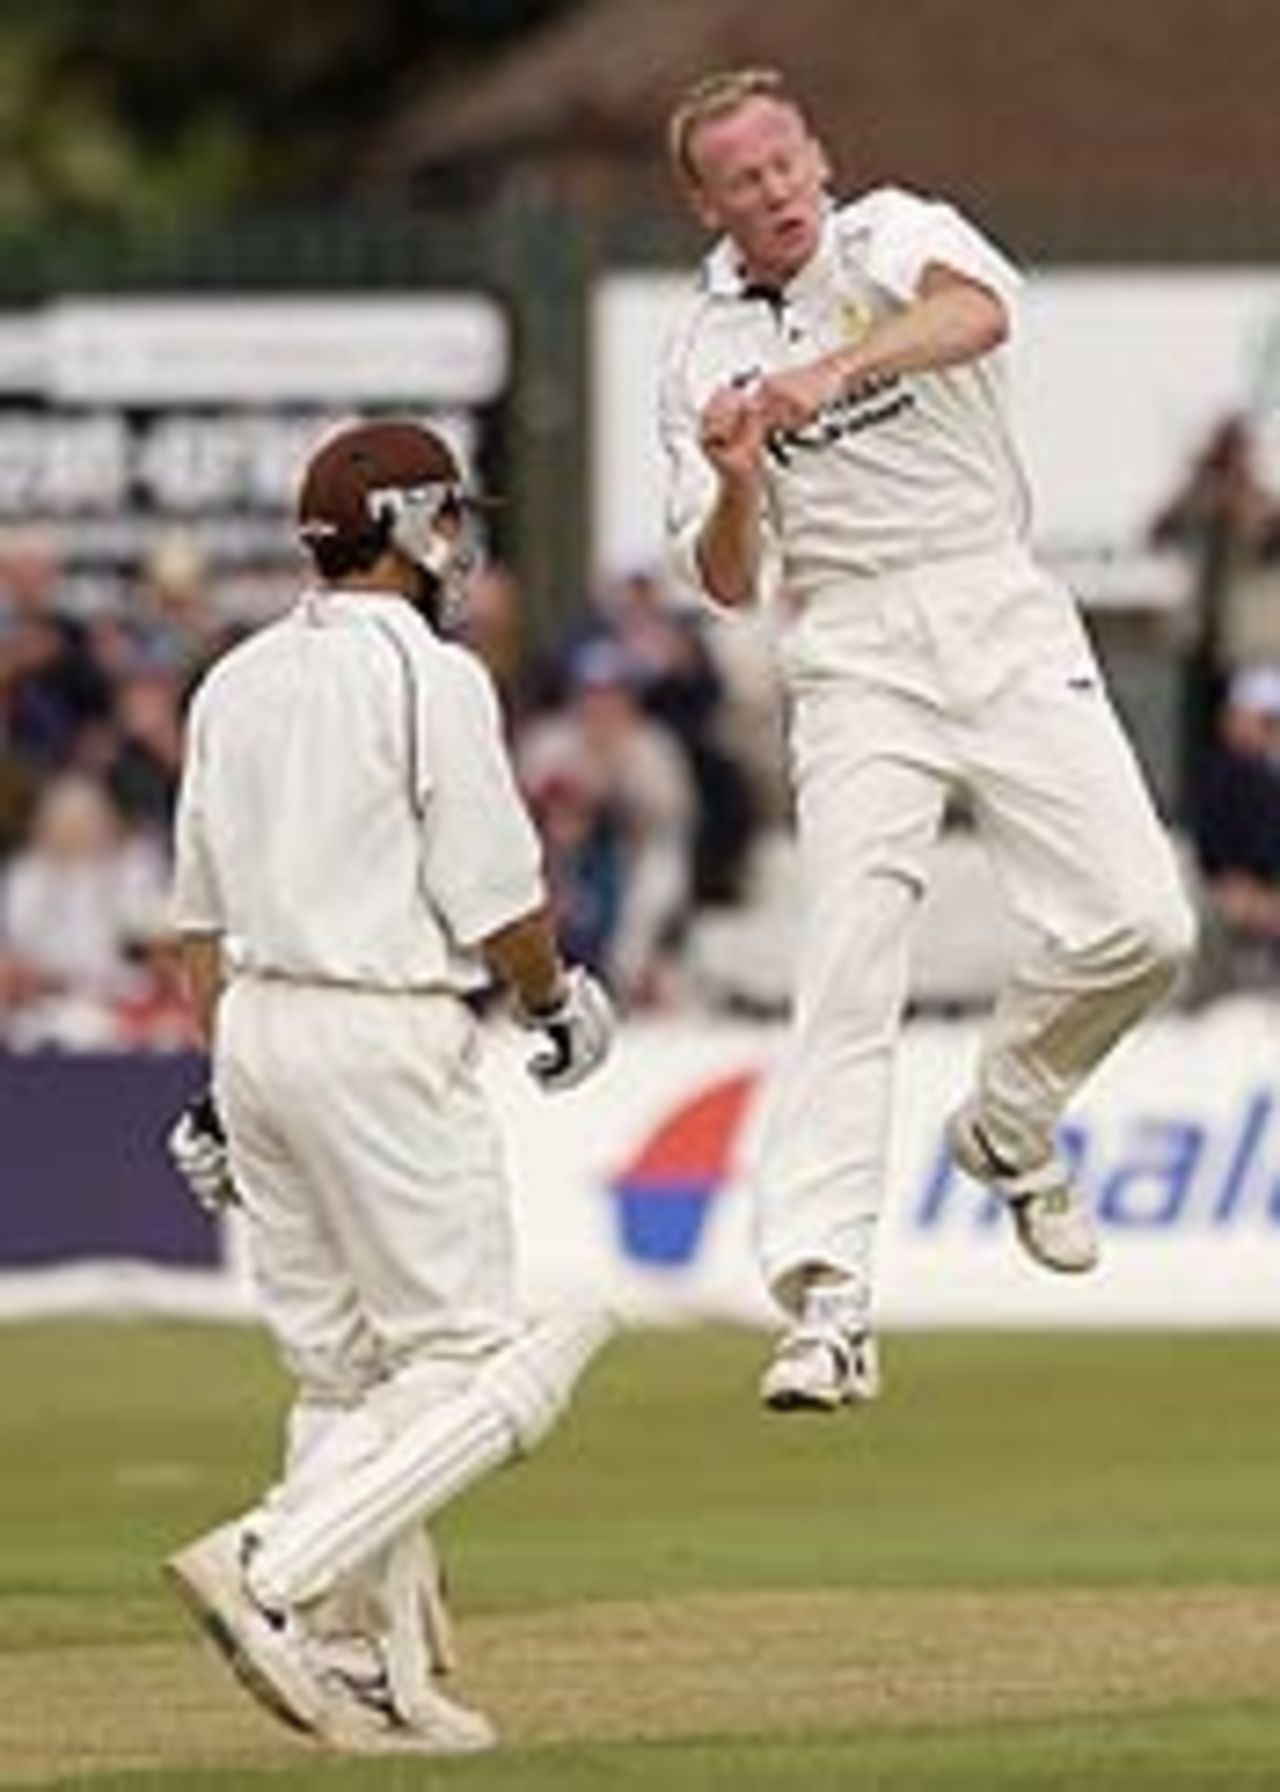 Kevin Dean of Derbyshire icelebrates taking the wicket of Mark Ramprakash, Derbyshire v Surrey, C&G, June 11, 2003